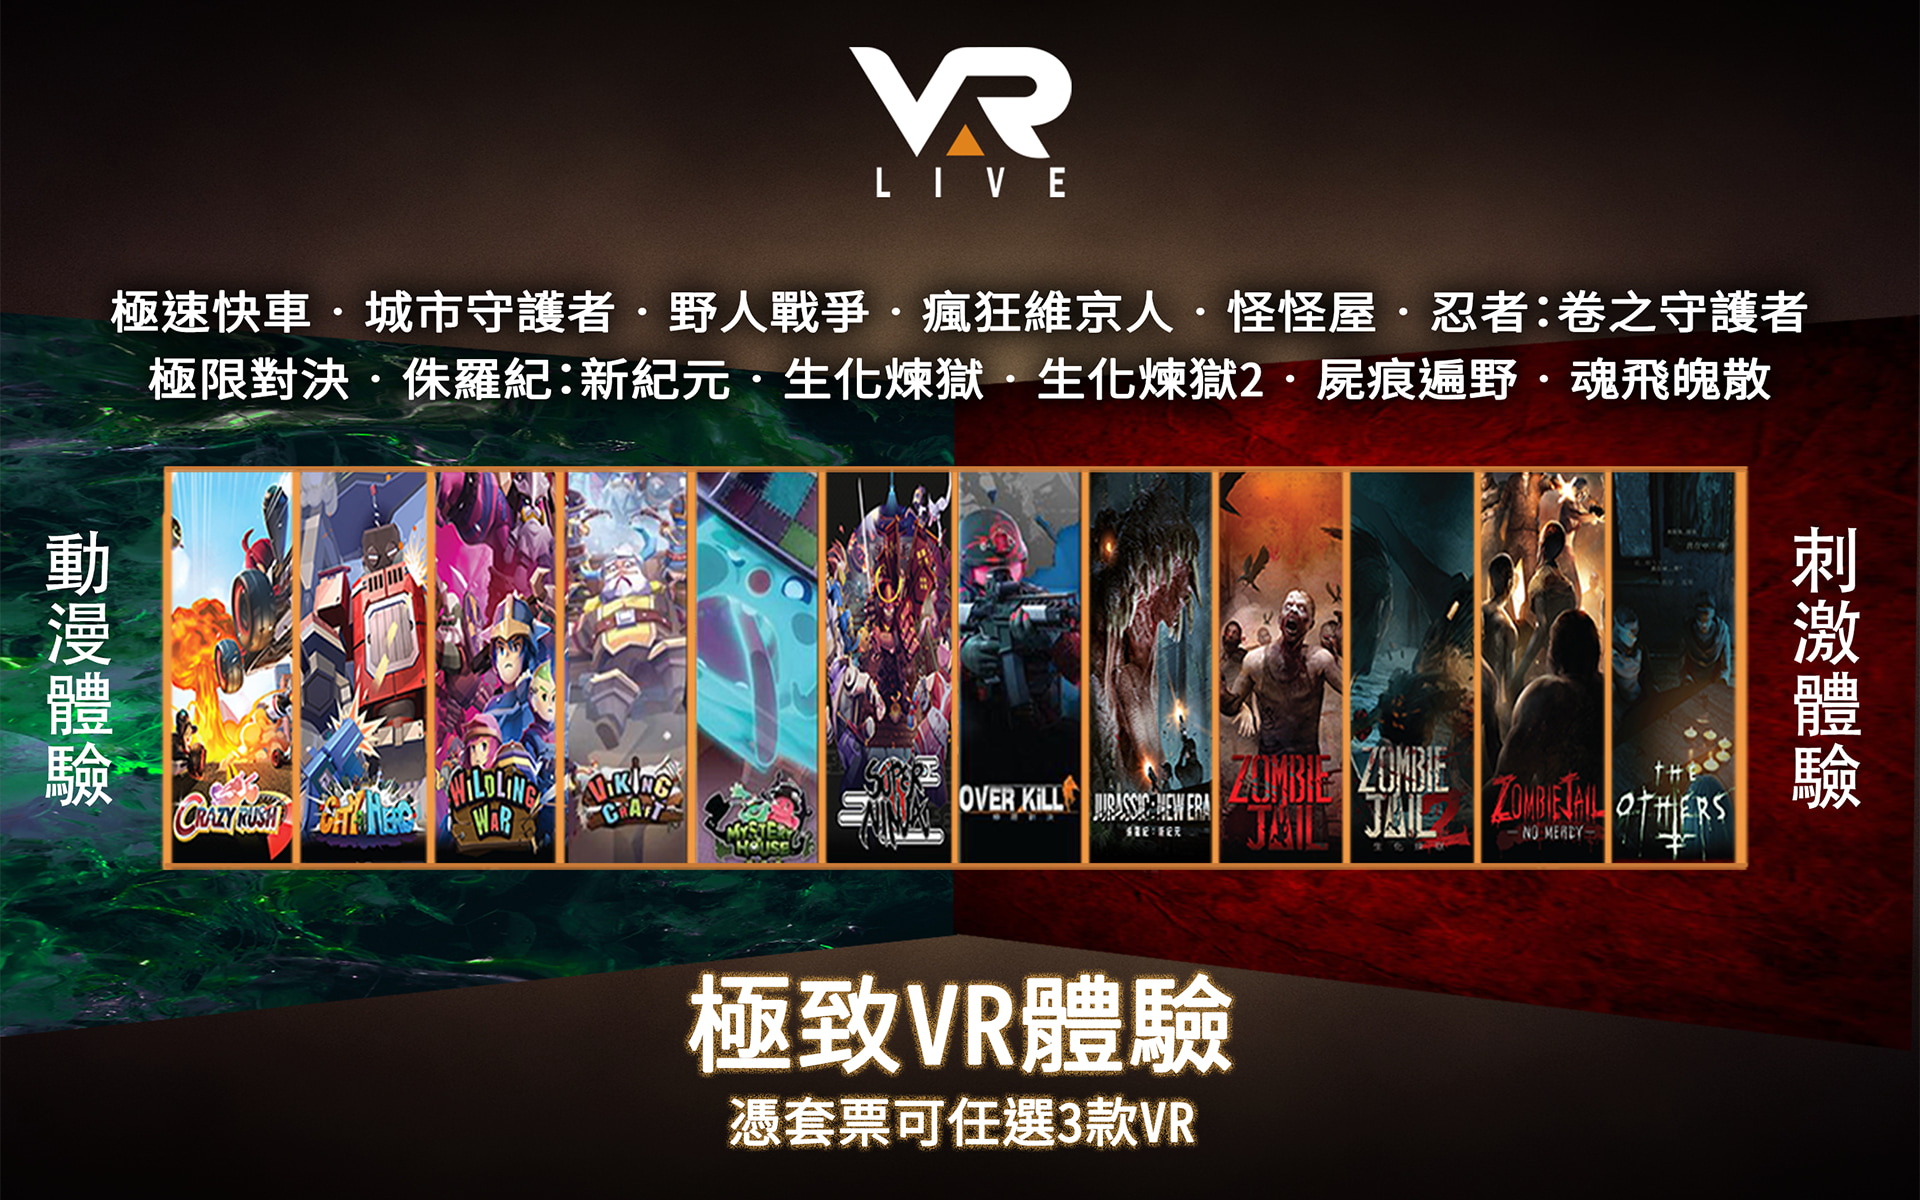 VAR LIVE VR虛擬實境體驗 - 荔枝角